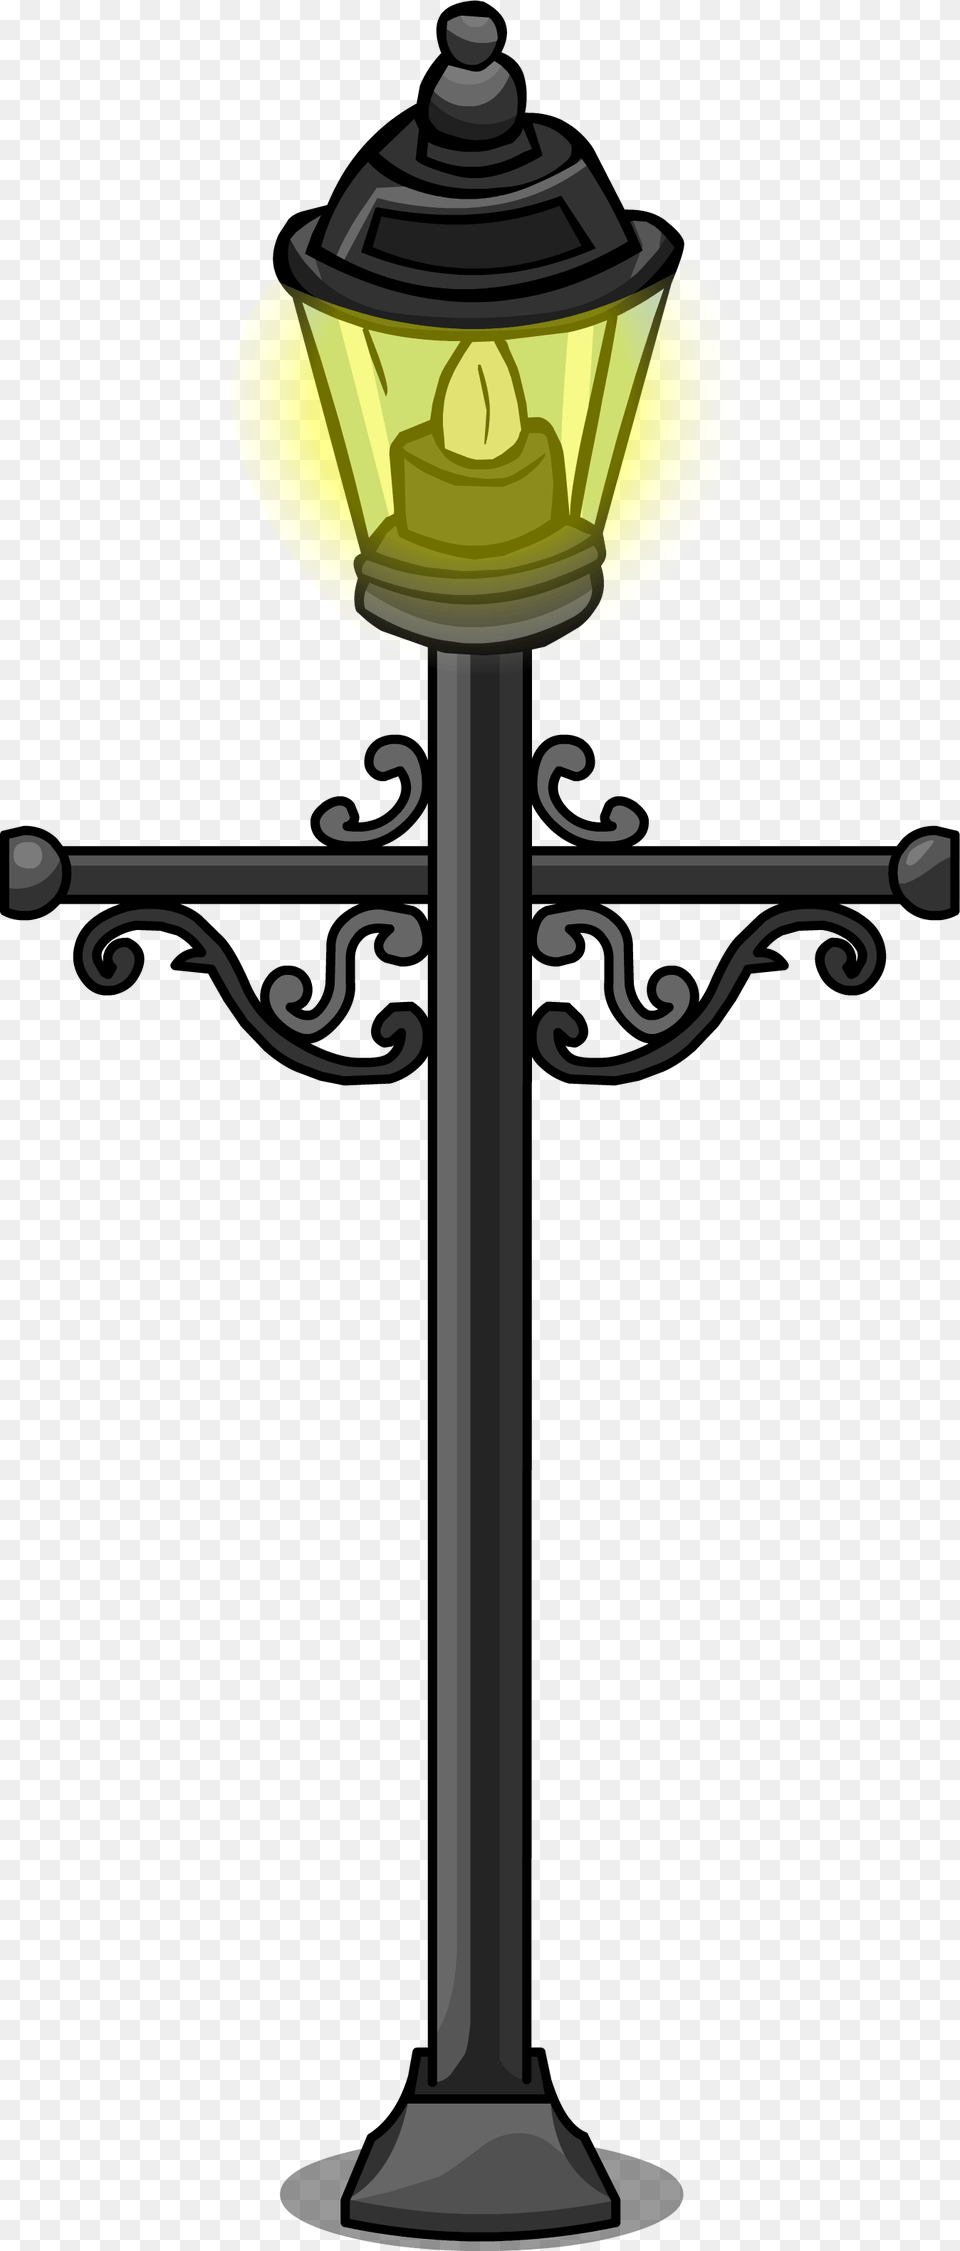 Wrought Iron Lamp Post Lamp Post Sprite, Lamp Post, Cross, Symbol Png